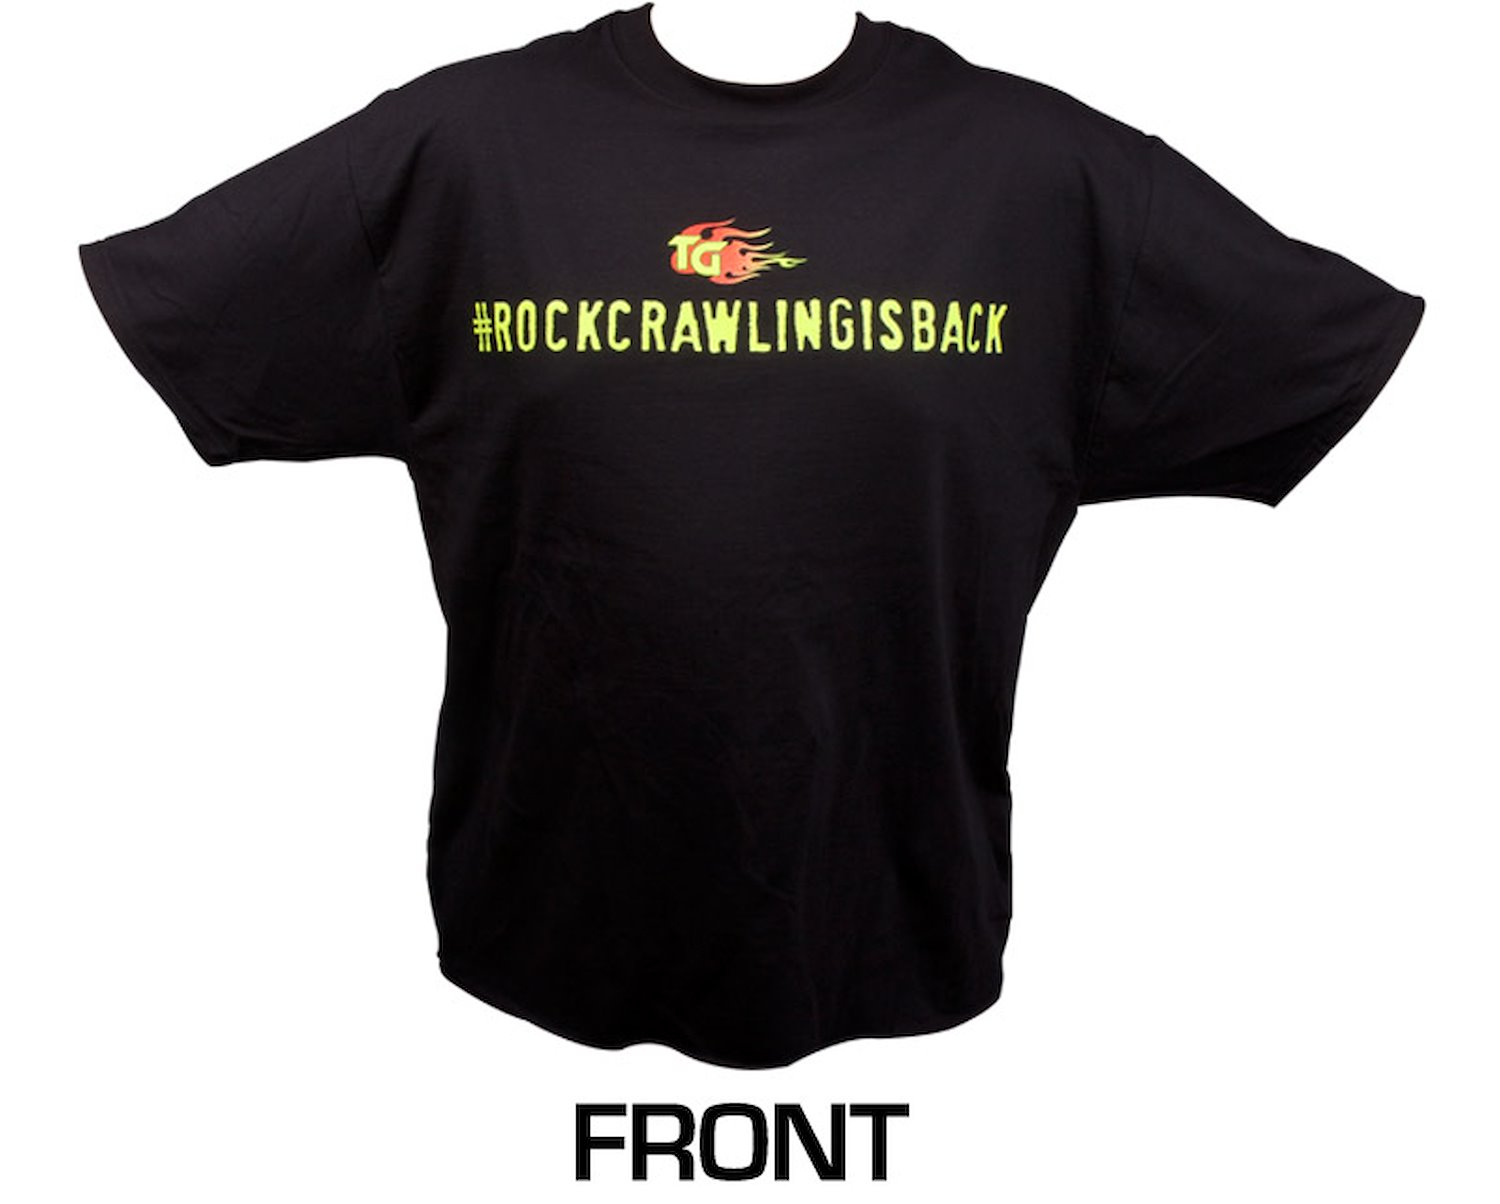 Short Sleeved Black Shirt #rockcrawlingisback X-Large